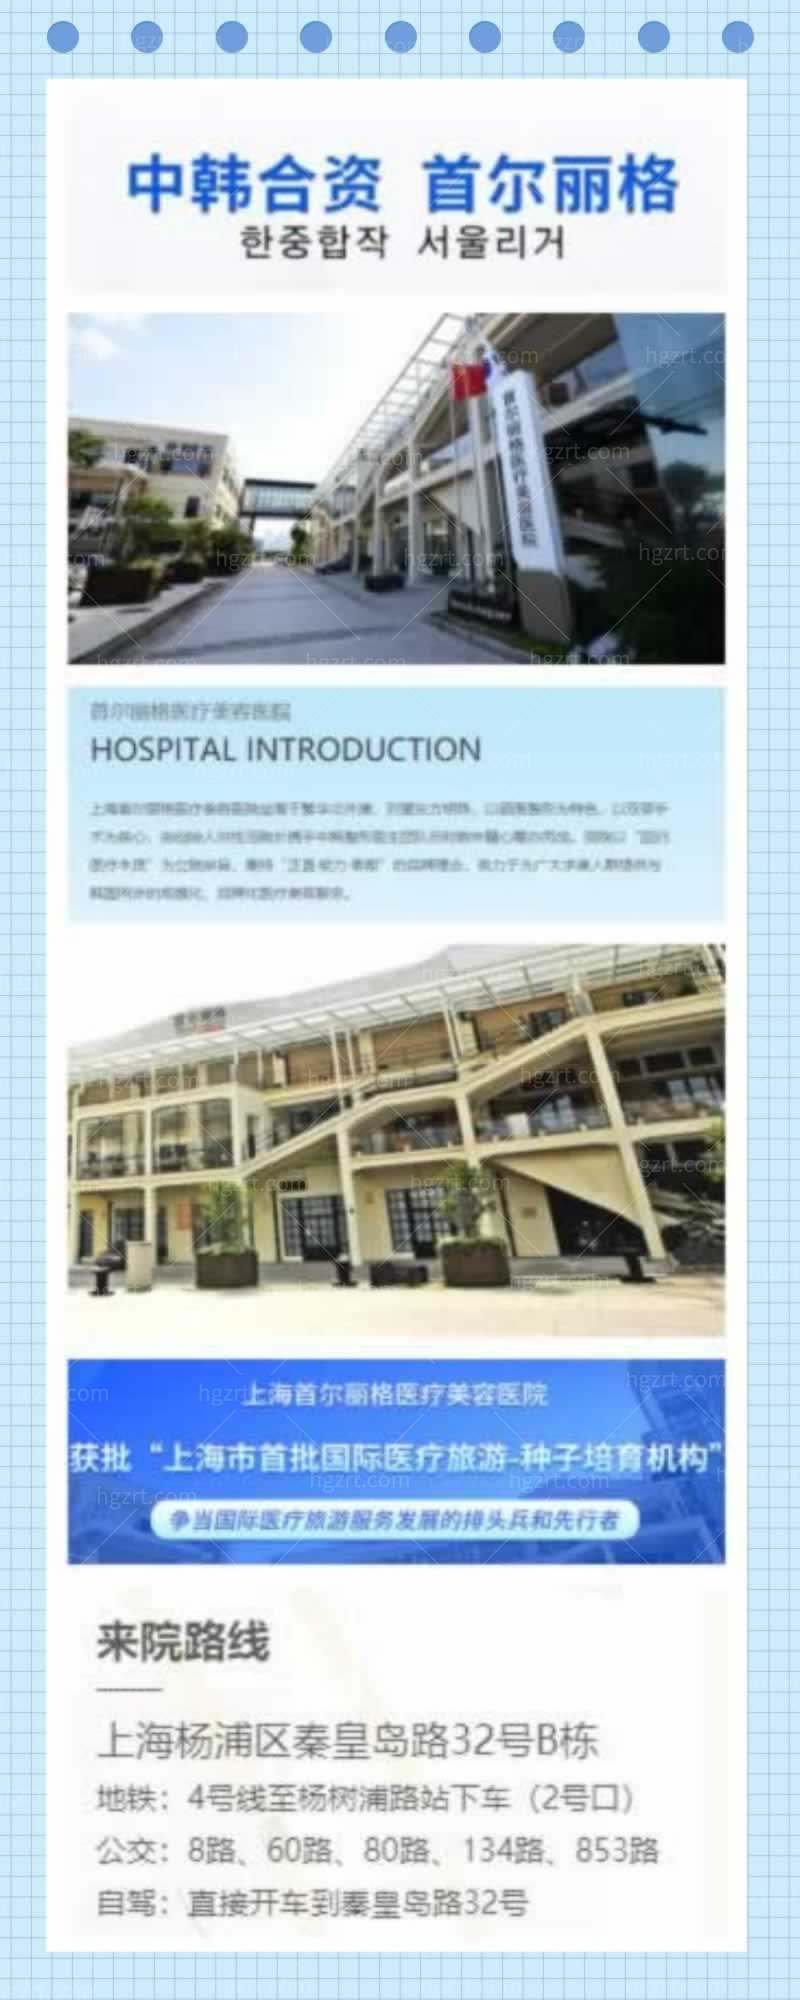 上海首尔丽格医疗美容医院自体脂肪全脸填充